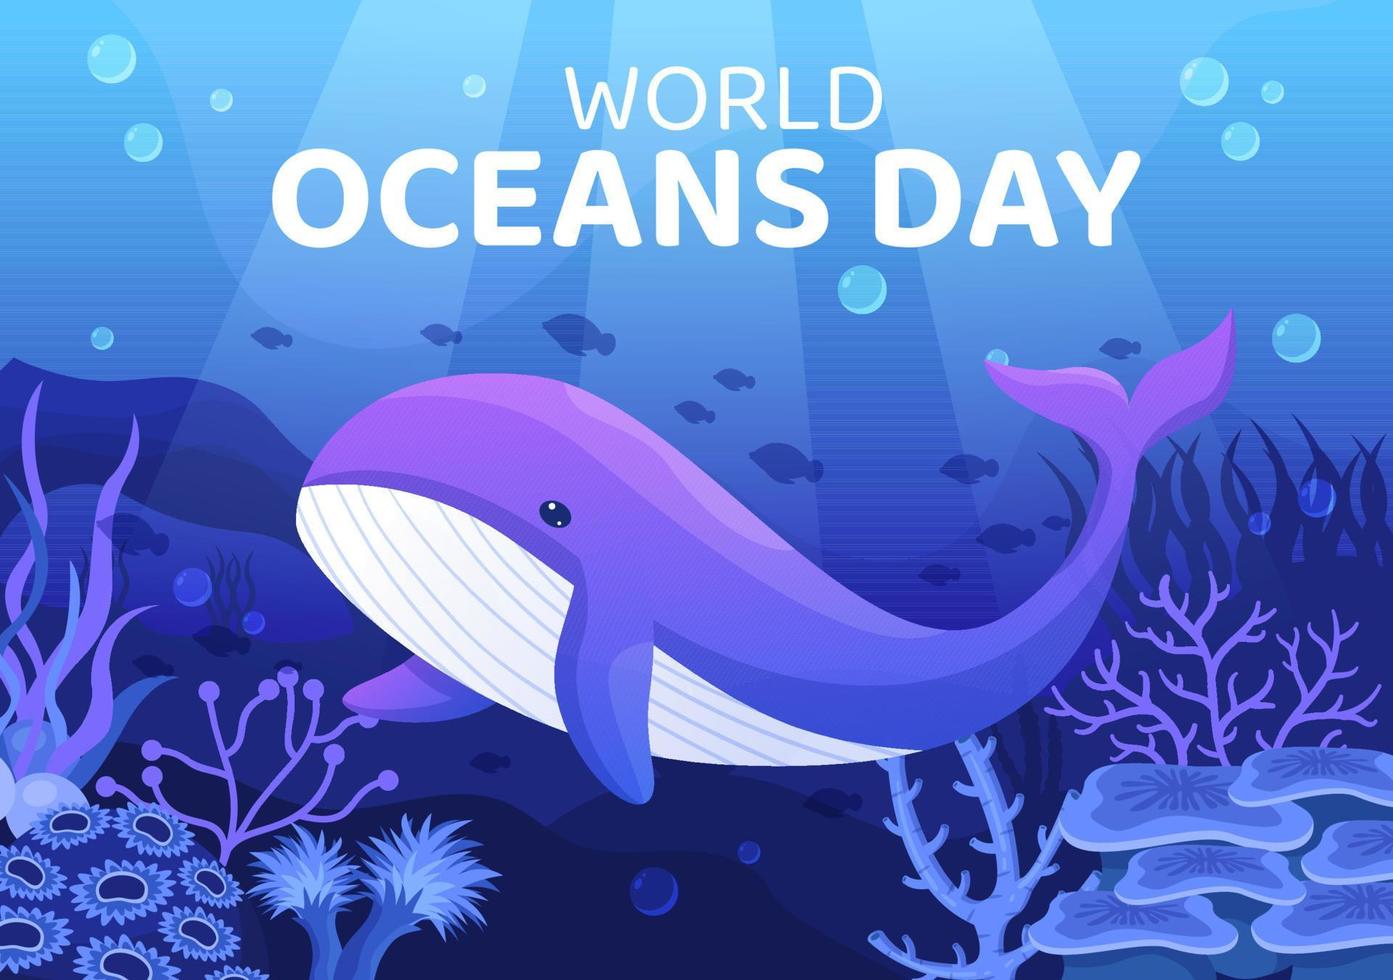 ilustração dos desenhos animados do dia mundial do oceano com cenário subaquático, vários peixes, corais e plantas marinhas dedicados a ajudar a proteger ou preservar vetor